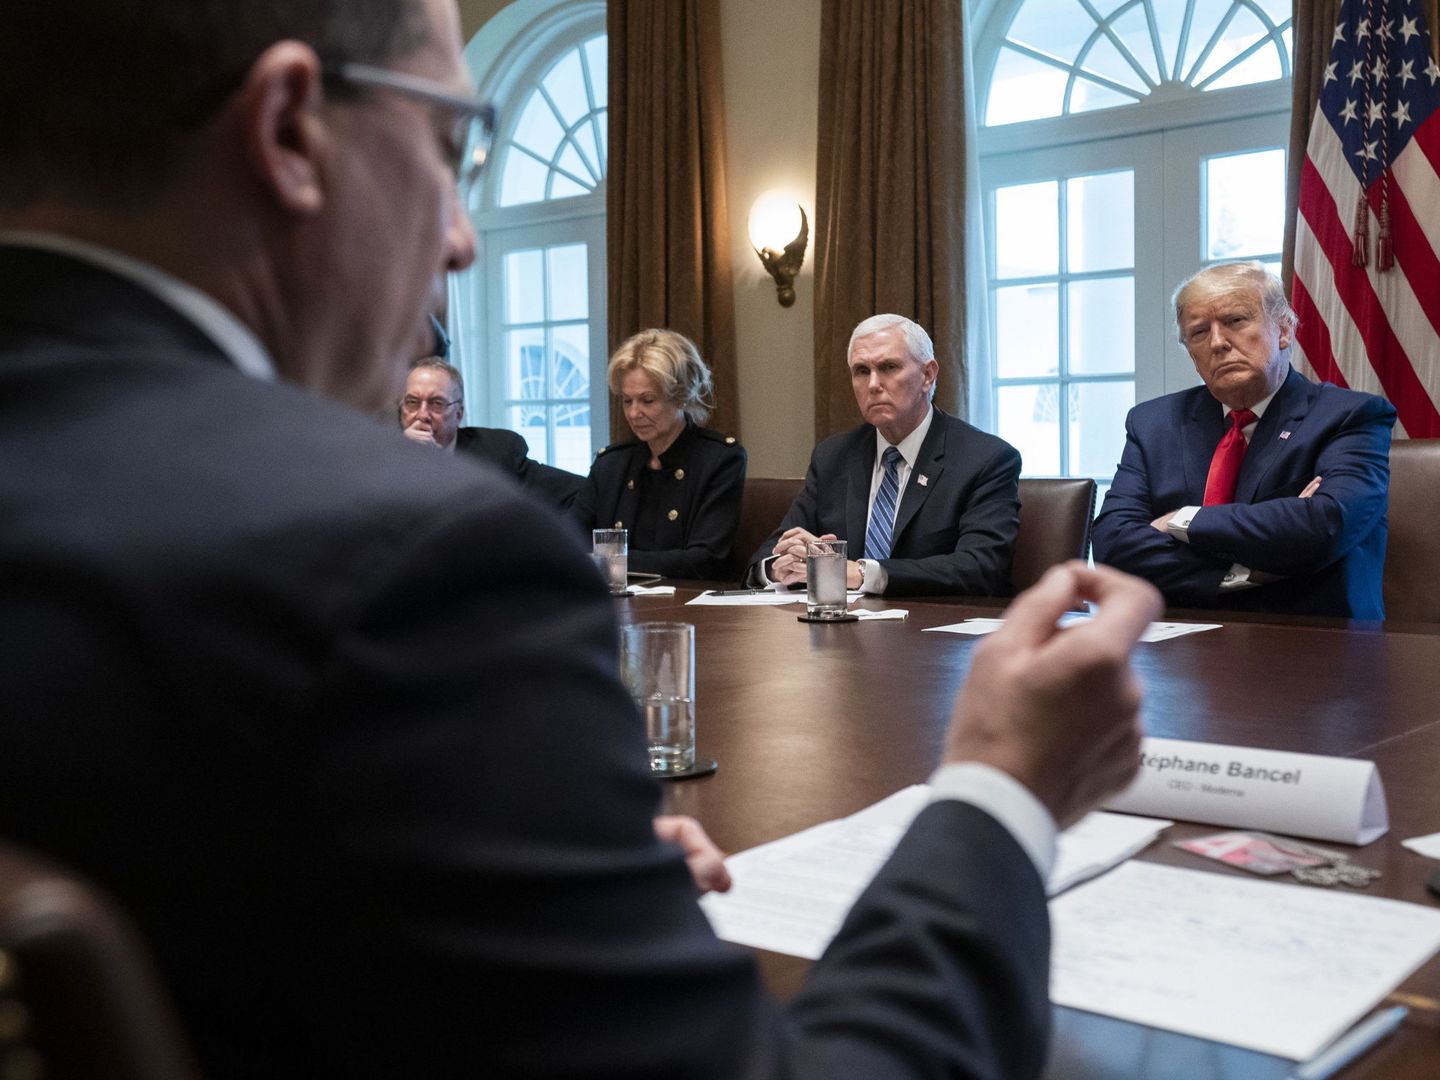 Stéphane Bancel, de espaldas, en un encuentro con Donald Trump y Mike Pence. (Reuters)